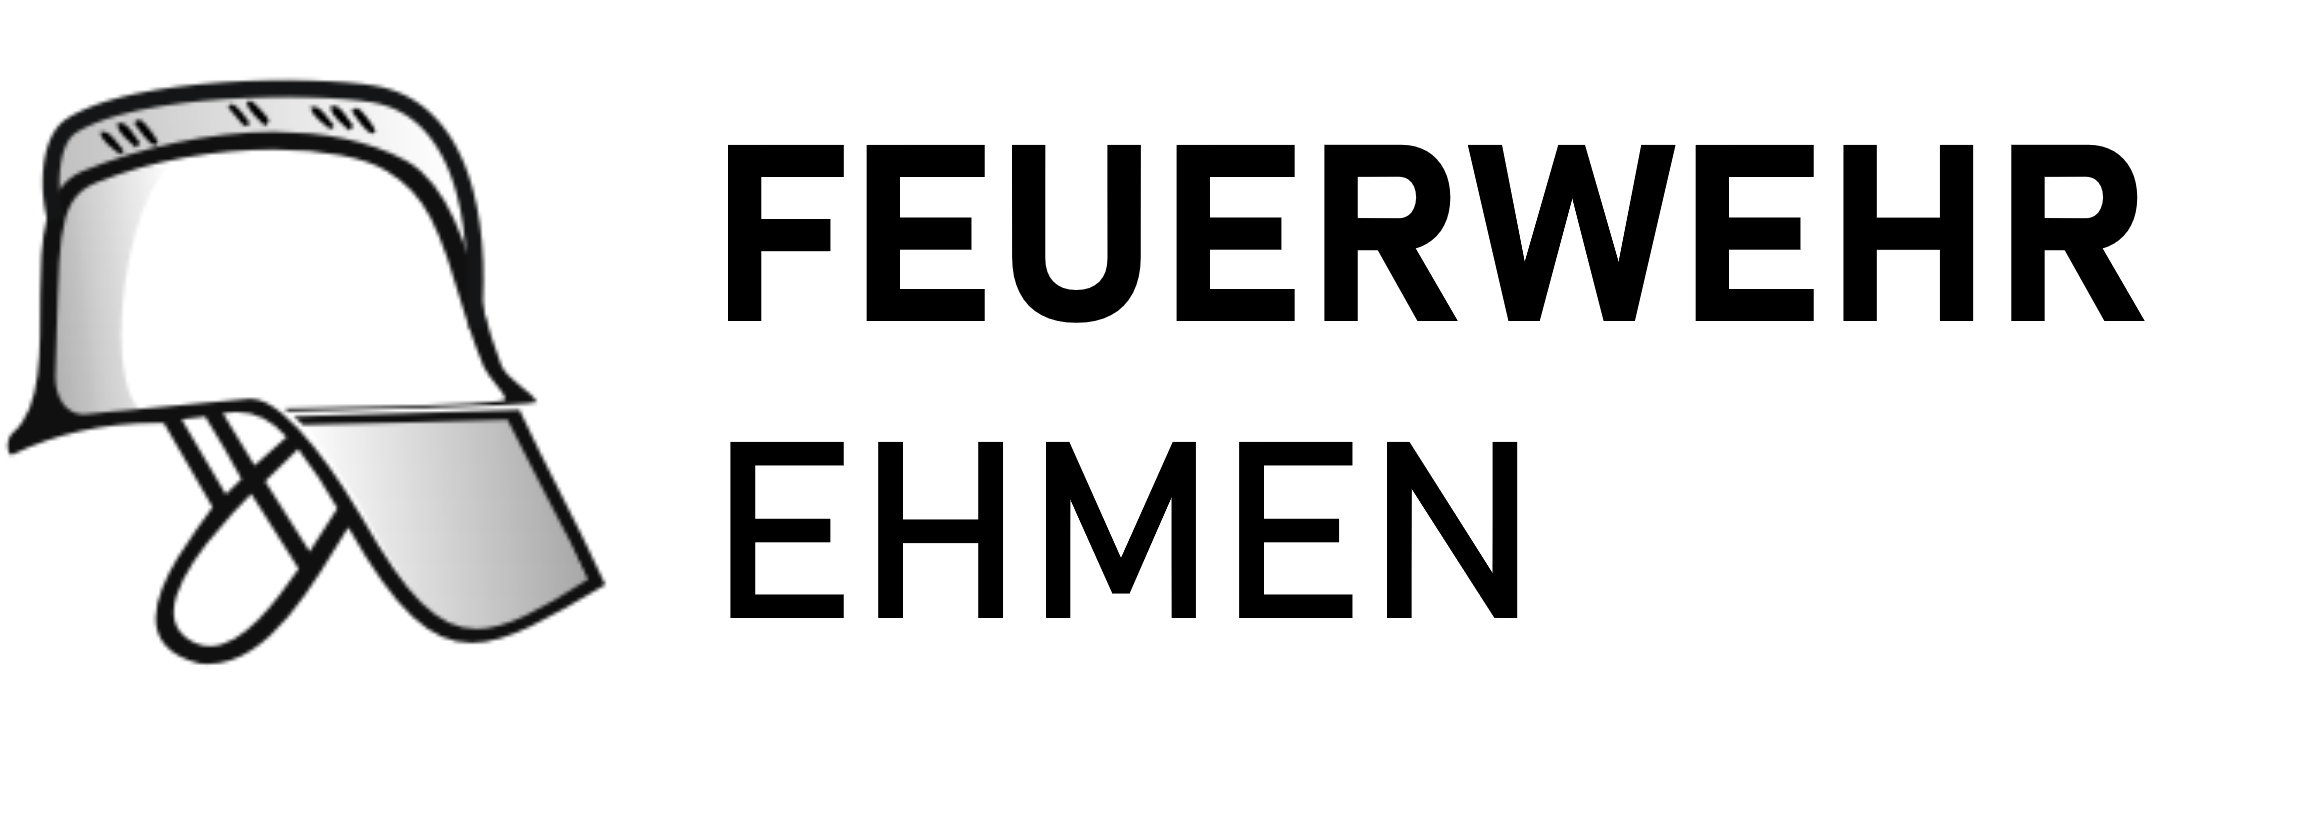 Freiwllige Feuerwehr Ehmen Logo